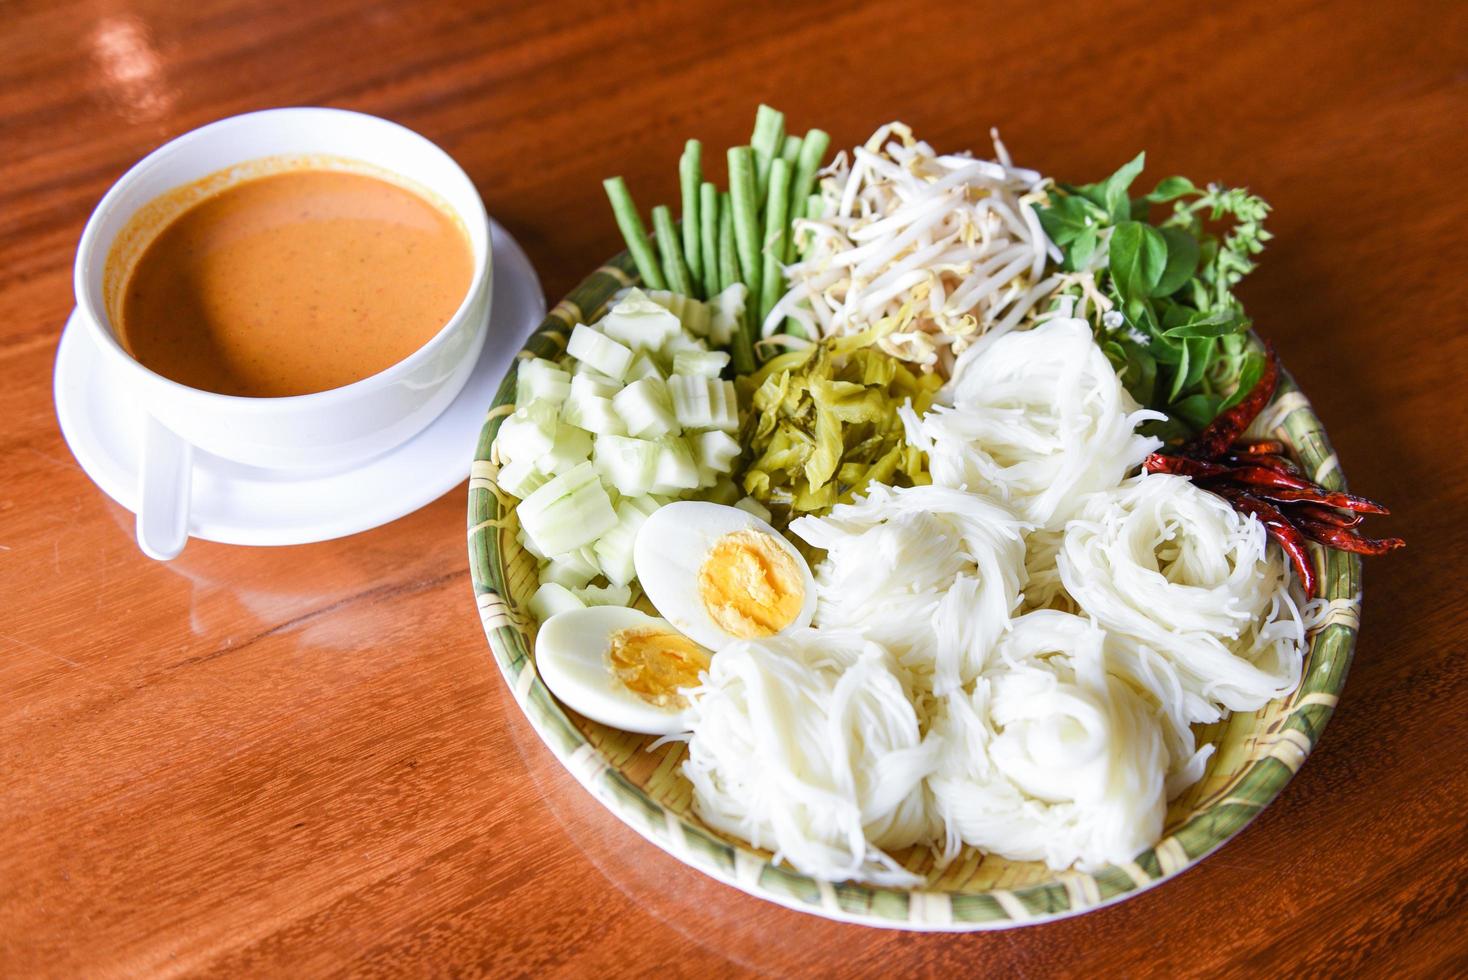 Fideos de arroz tailandeses: cierre la comida de Tailandia fideos vermicelli huevos cocidos y verduras frescas en un plato con un tazón de sopa de curry servido en una mesa de madera foto